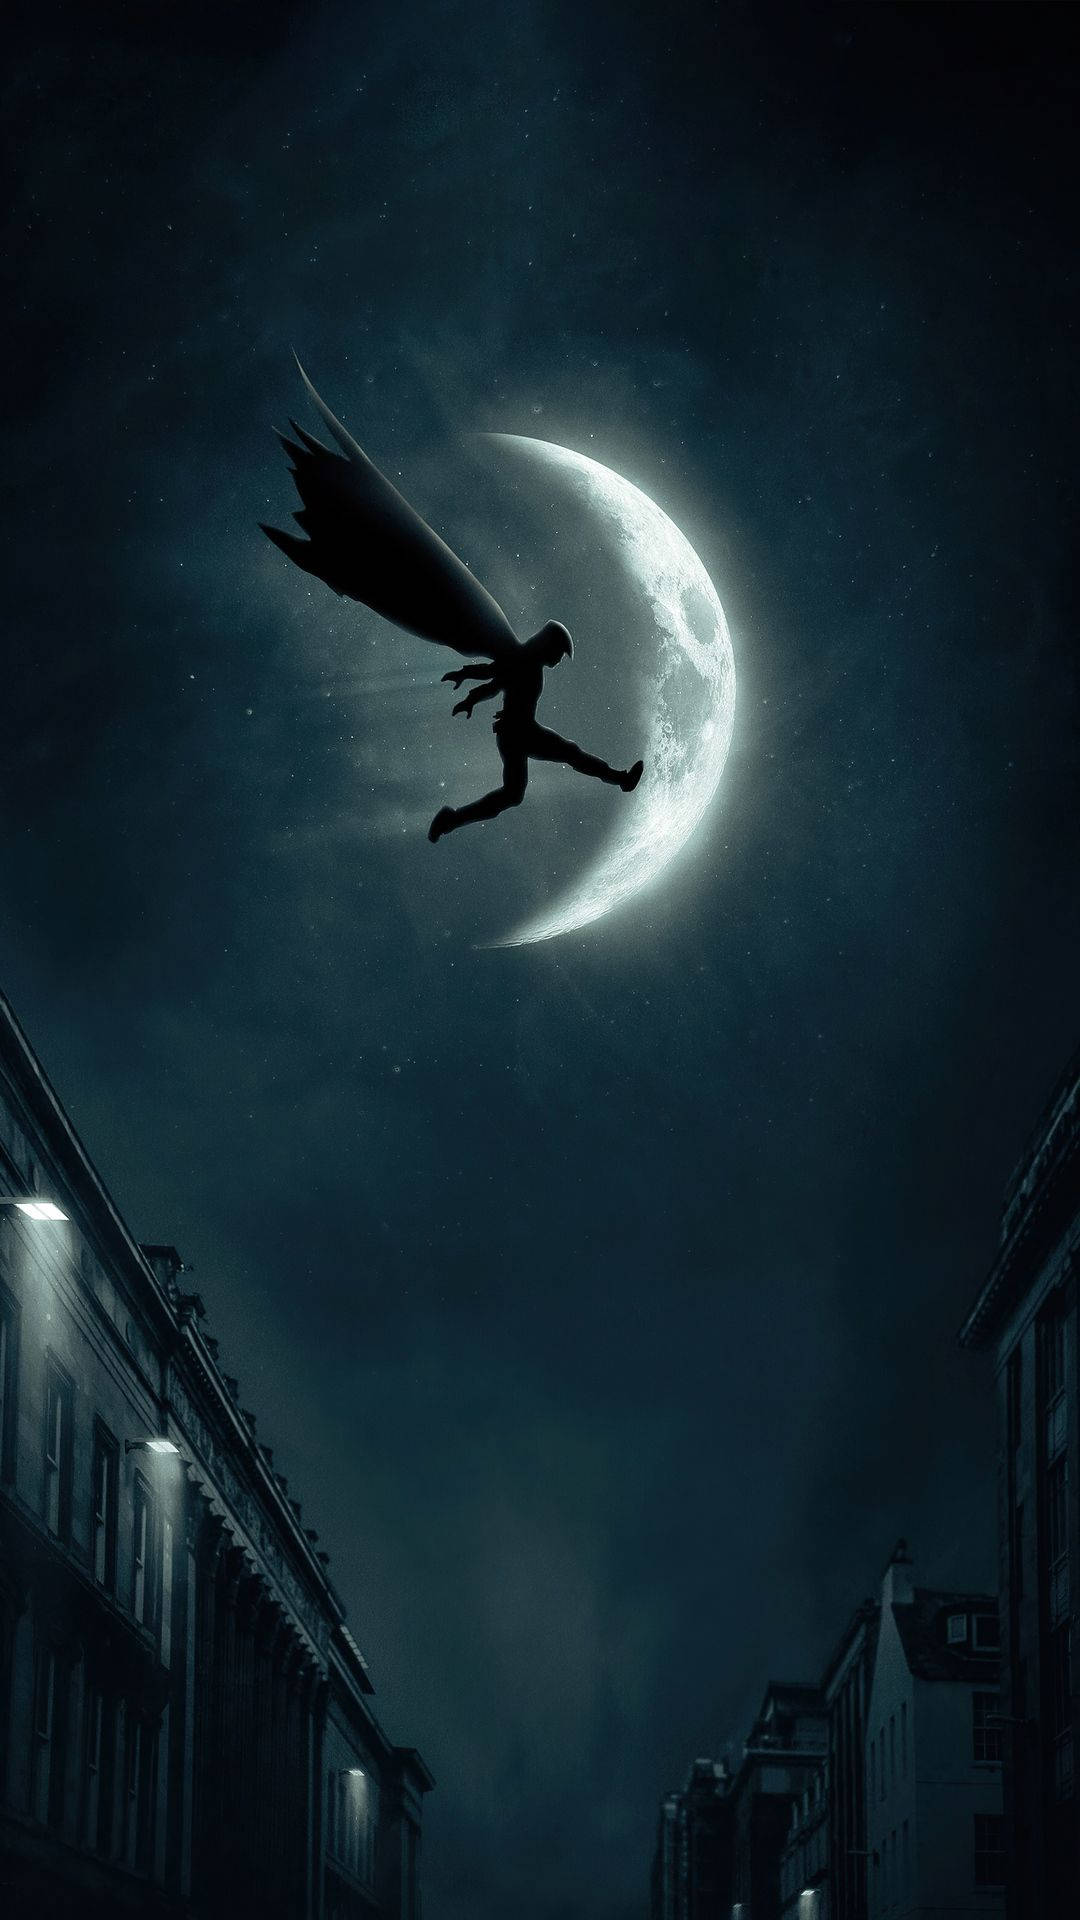 Durchdie Dunkle Nacht Springender Moon Knight-telefon Wallpaper